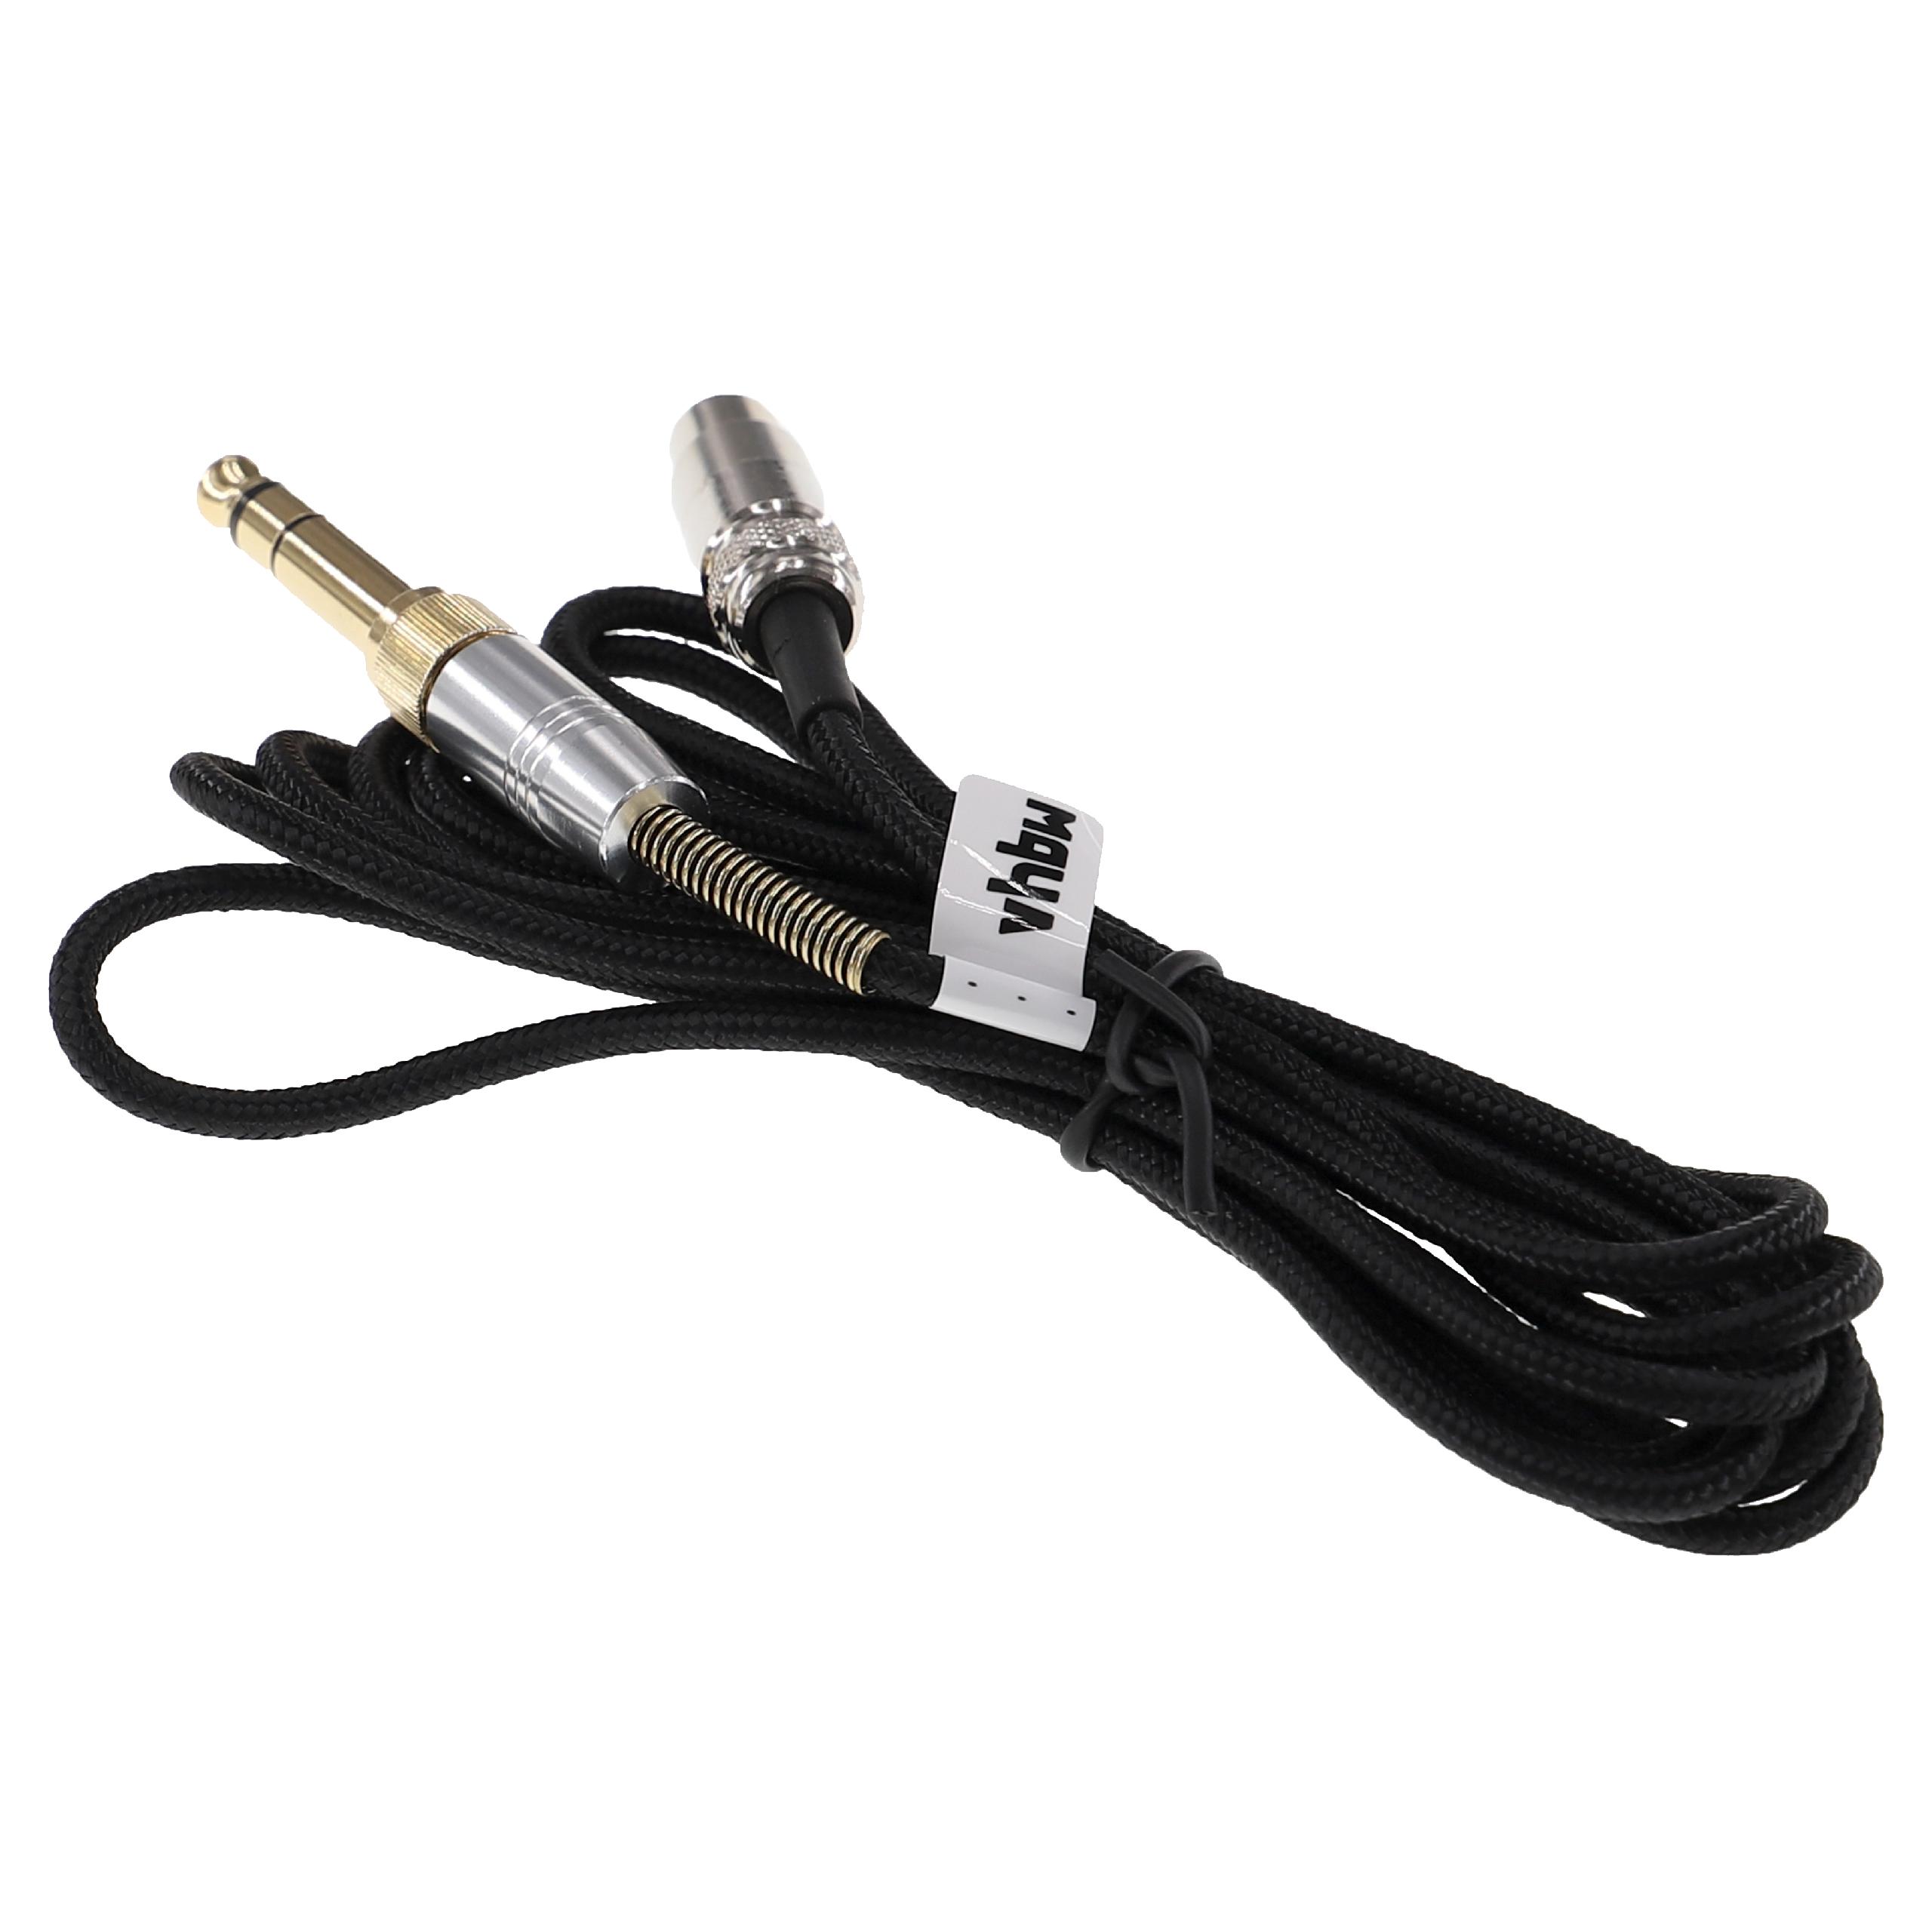 Kabel do słuchawek K240 MK II AKG, Pioneer K240 MK II - czarny, 2 m